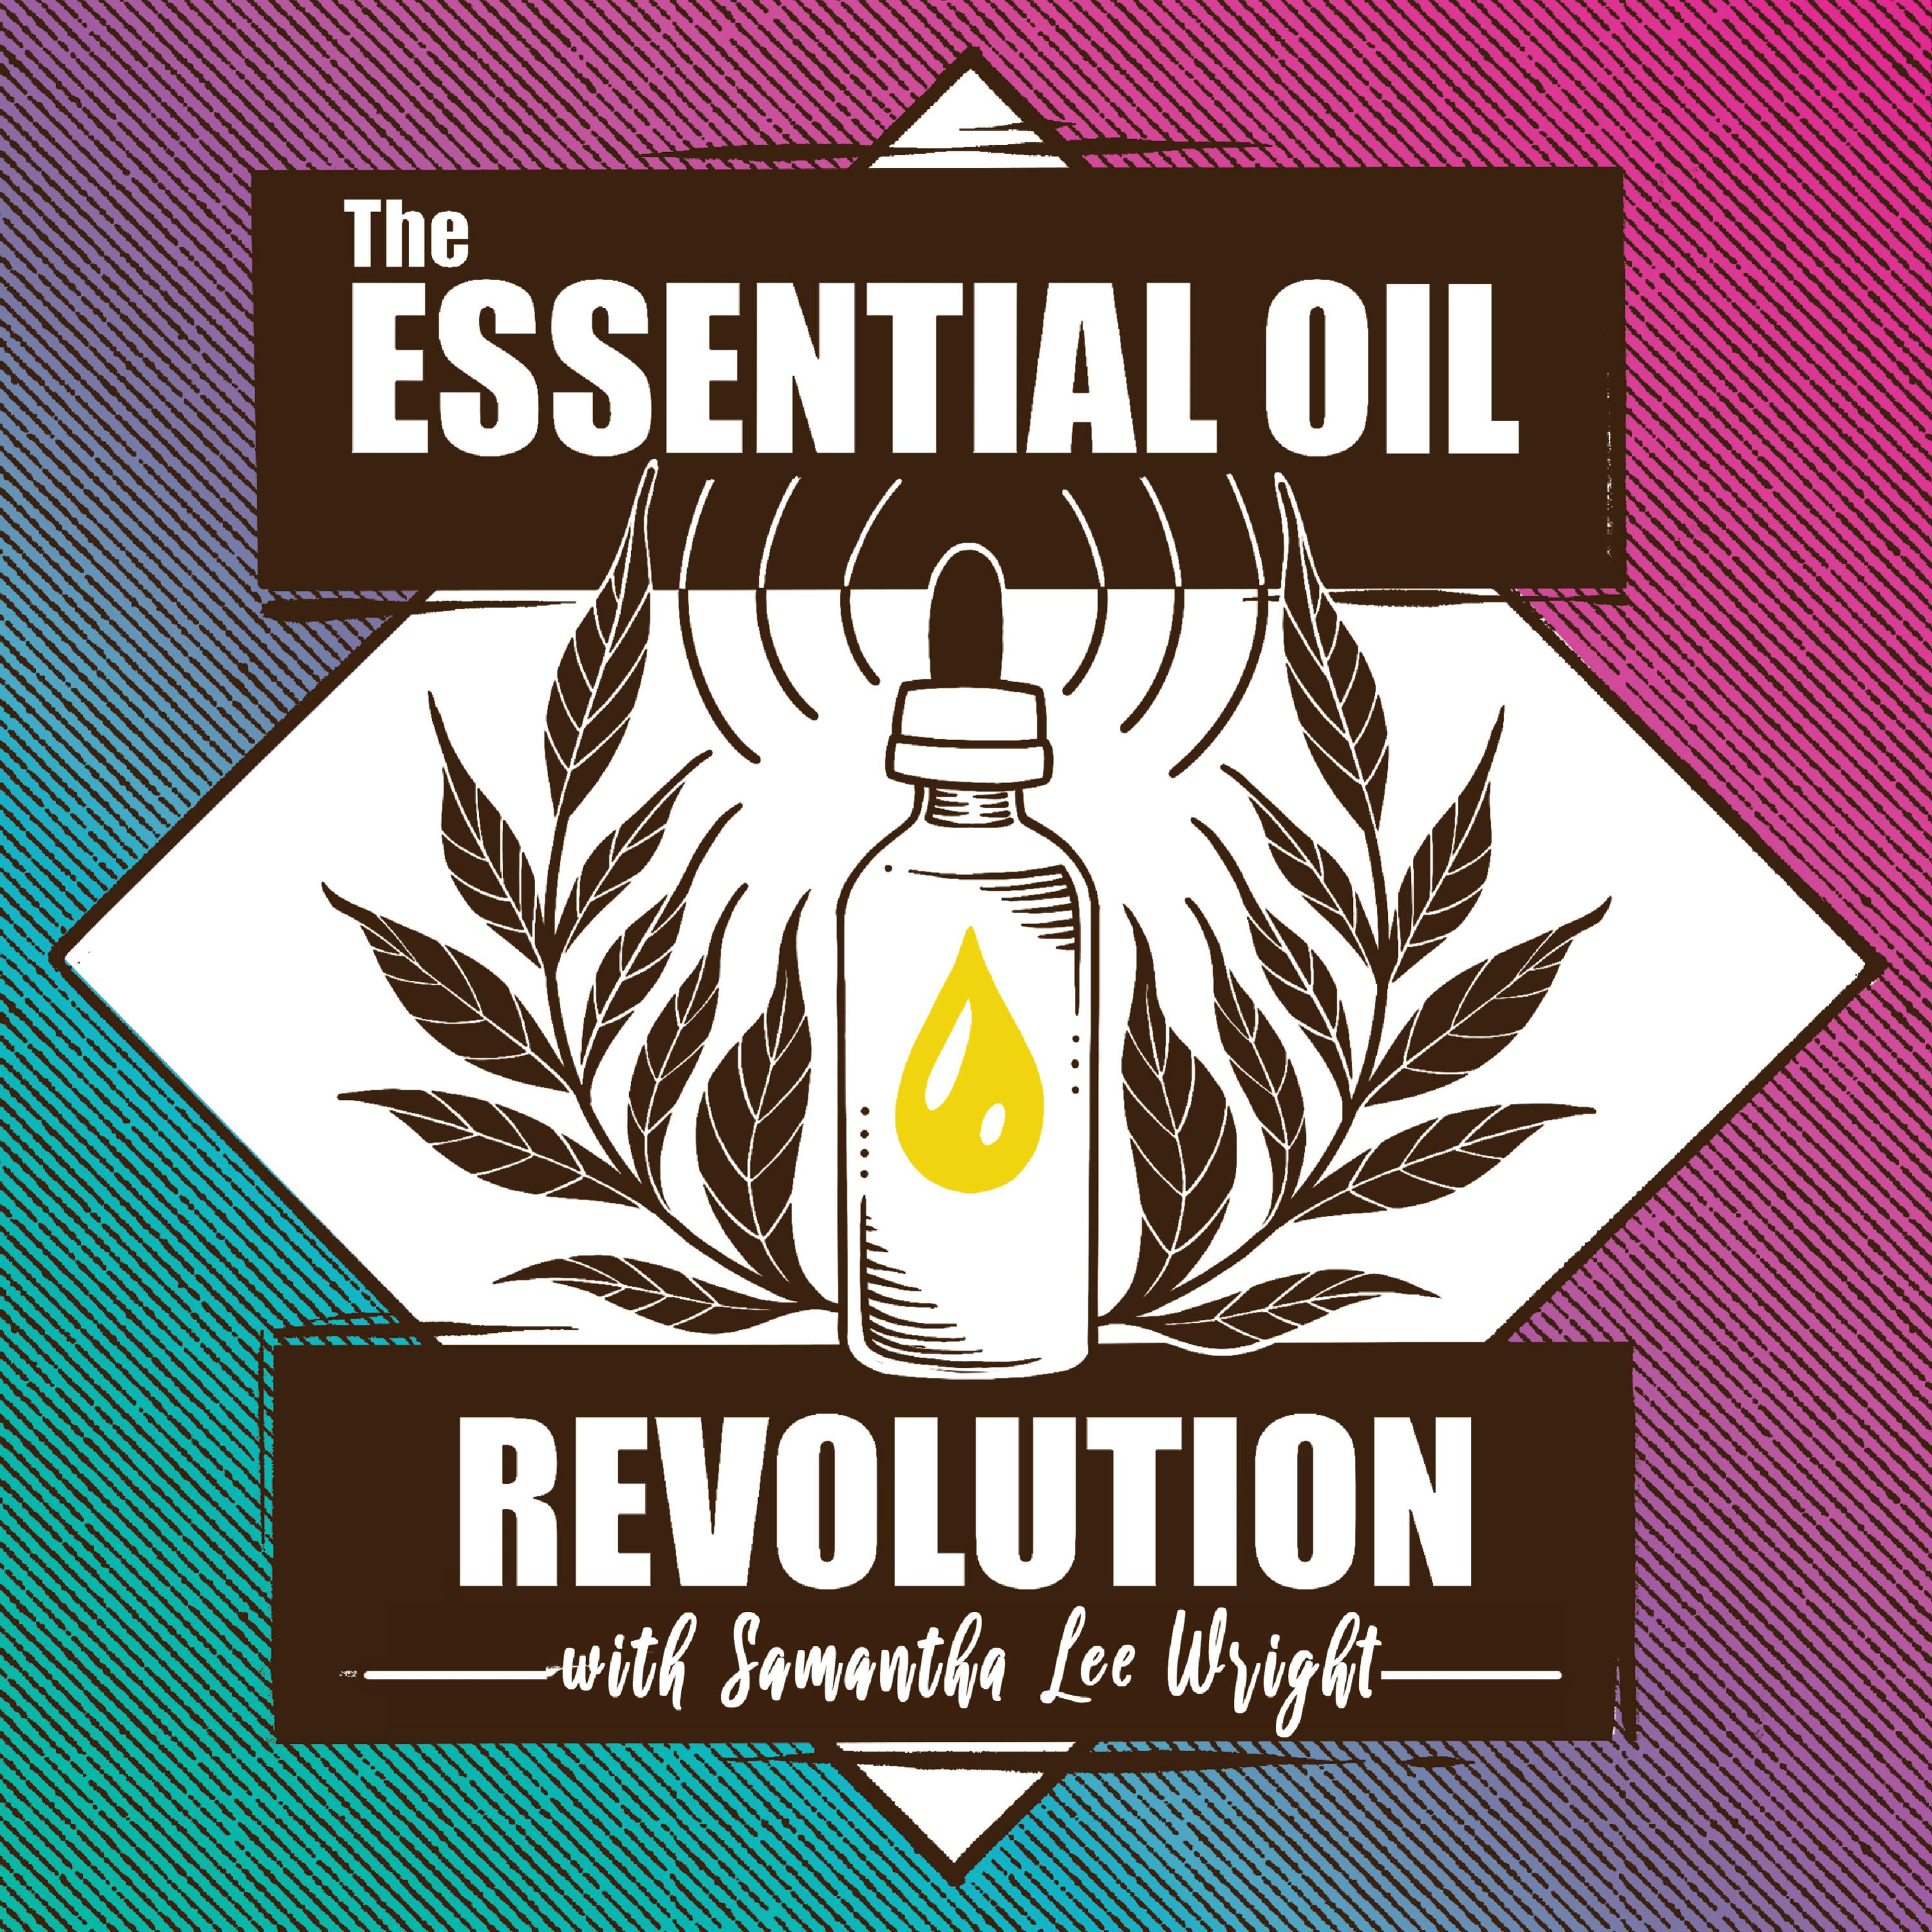 319: Flower Essences vs. Essential Oils w/ Kerry Hughes